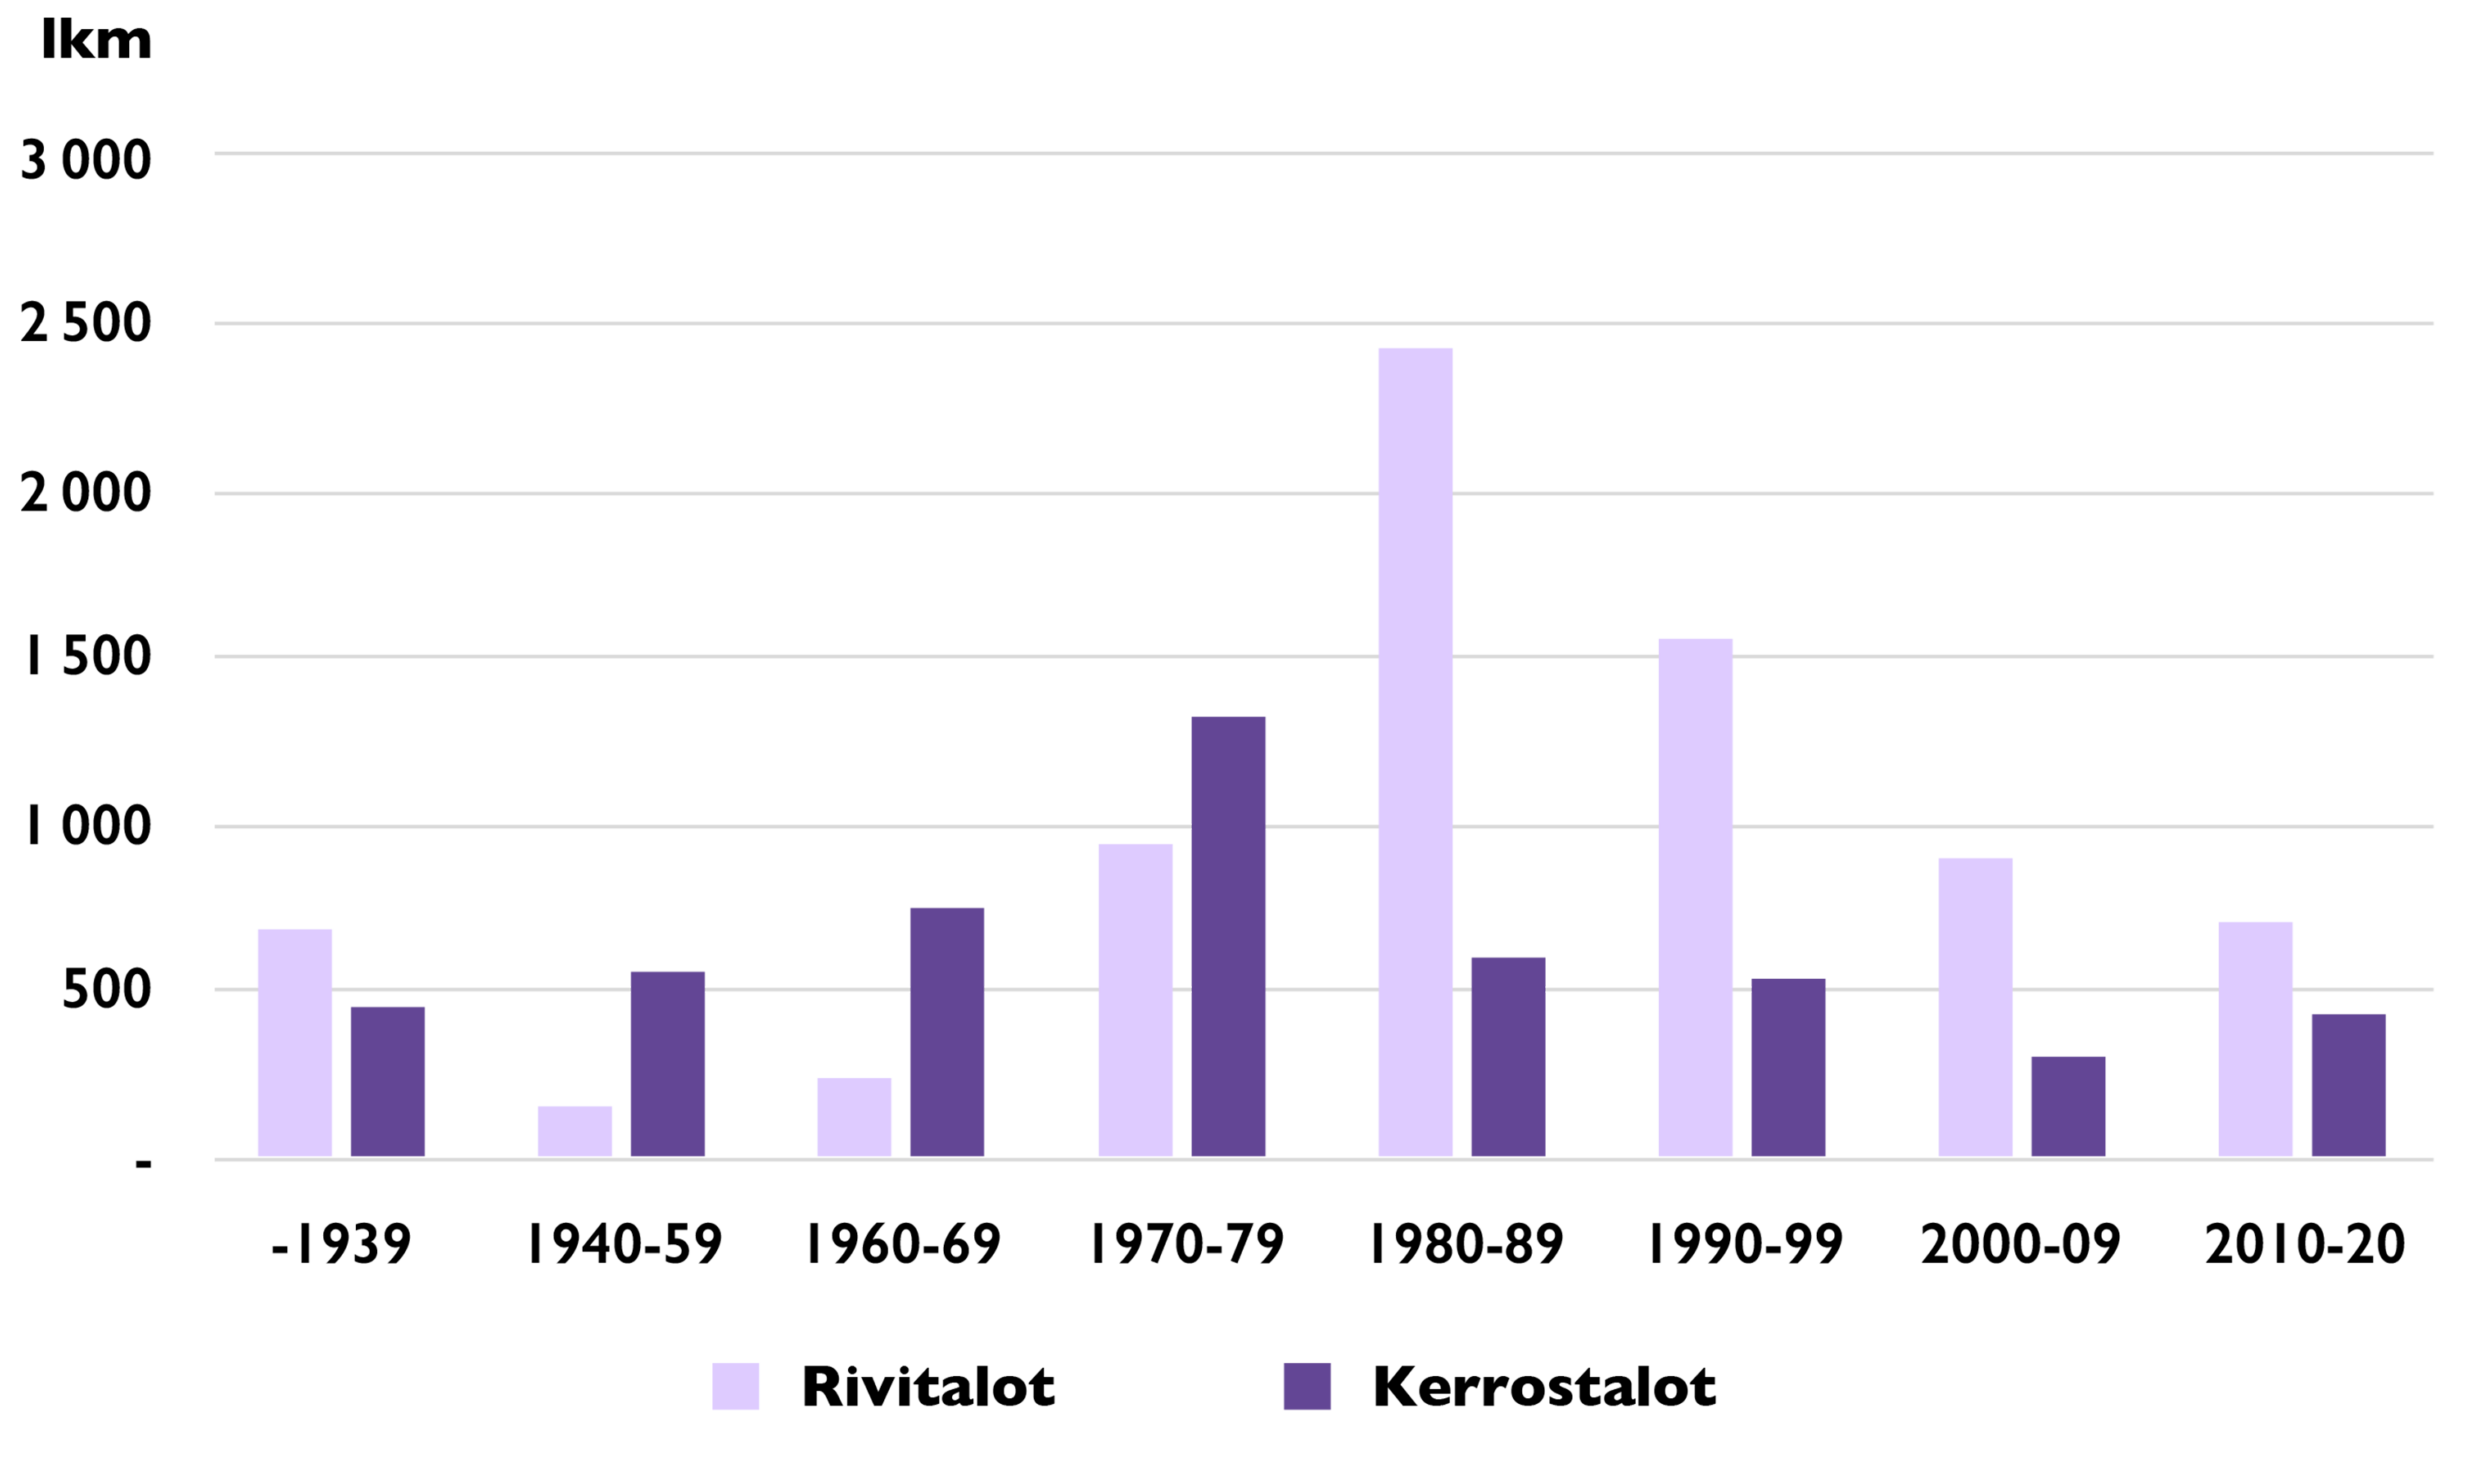 Pylväsdiagrammi rivi- ja kerrostalojen ikärakenteesta Varsinais-Suomessa (Tilastokeskus 2021) osoittaa, että rivitaloja on rakennettu selkeästi eniten 1981–89 (liki 2500 kpl), kerrostalojen korkein pylväs on vuosikymmentä aiemmin (noin 1300 kpl). Ennen vuotta 1939 rakennettujen talojen osuus on suunnilleen sama, kuin vuosina 2010–20 rakennettujen.